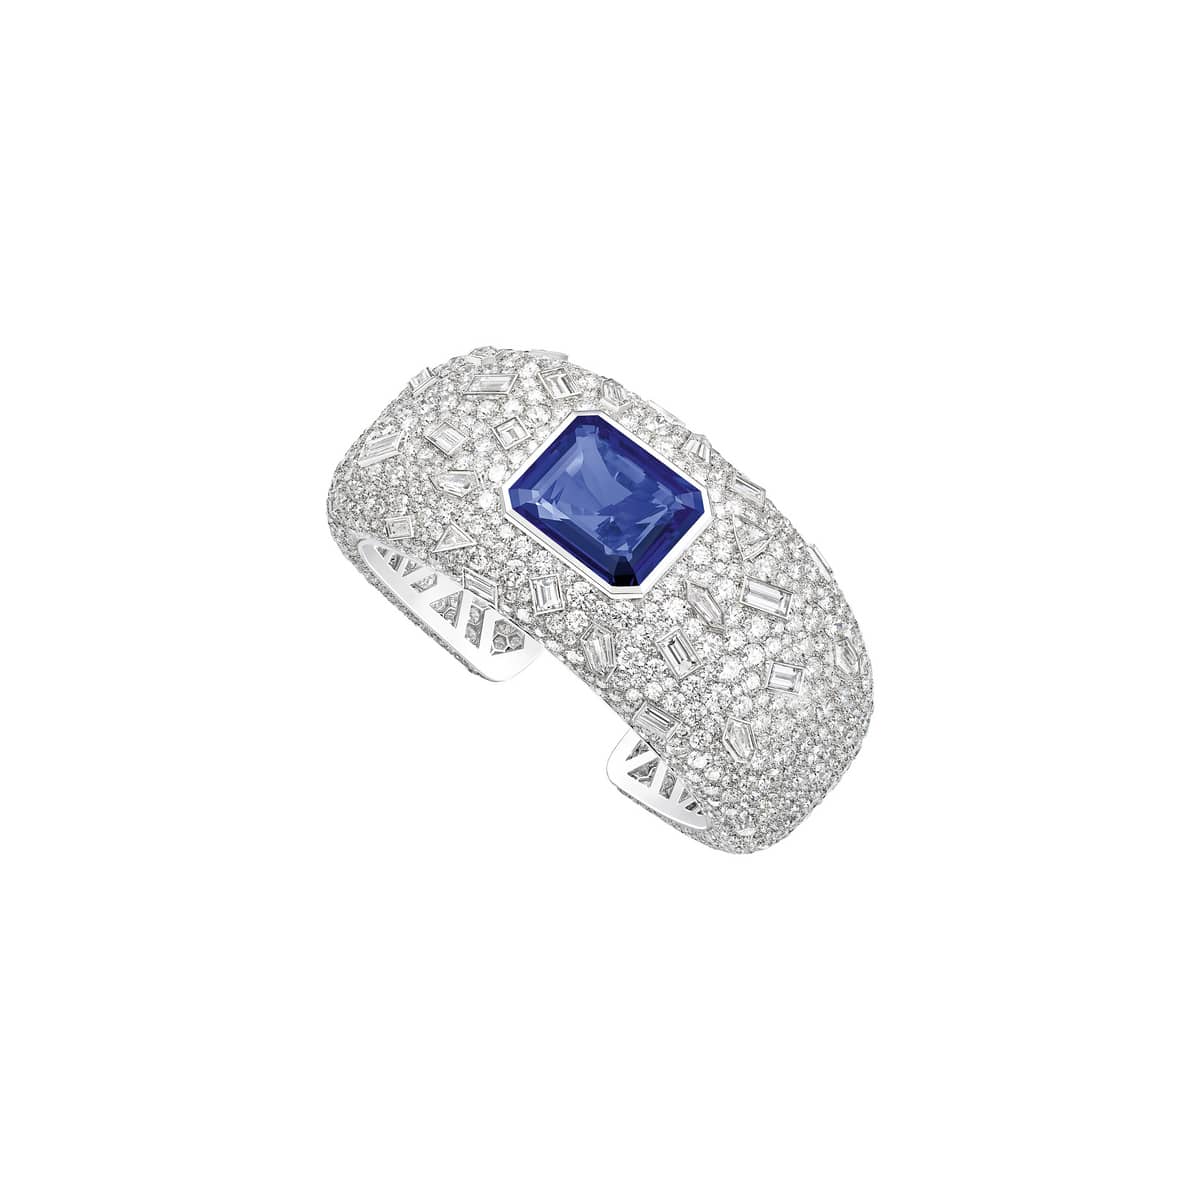 Rose Gold Tourmaline Diamond Ring - Piaget Luxury Jewelry G34UW500